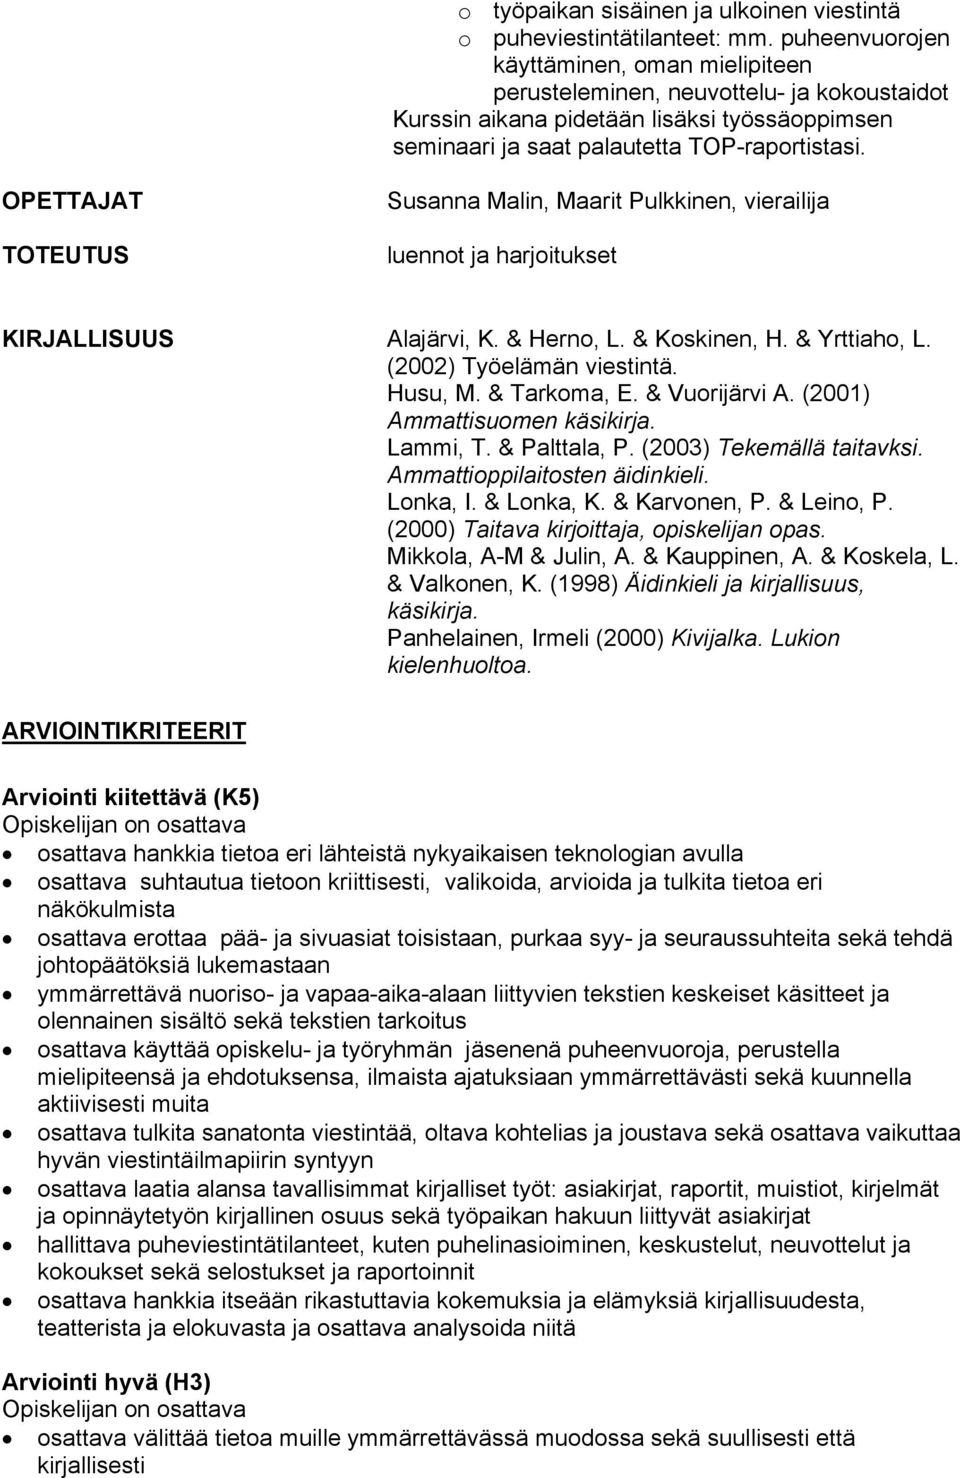 TOTEUTUS Susanna Malin, Maarit Pulkkinen, vierailija luennot ja harjoitukset KIRJALLISUUS Alajärvi, K. & Herno, L. & Koskinen, H. & Yrttiaho, L. (2002) Työelämän viestintä. Husu, M. & Tarkoma, E.